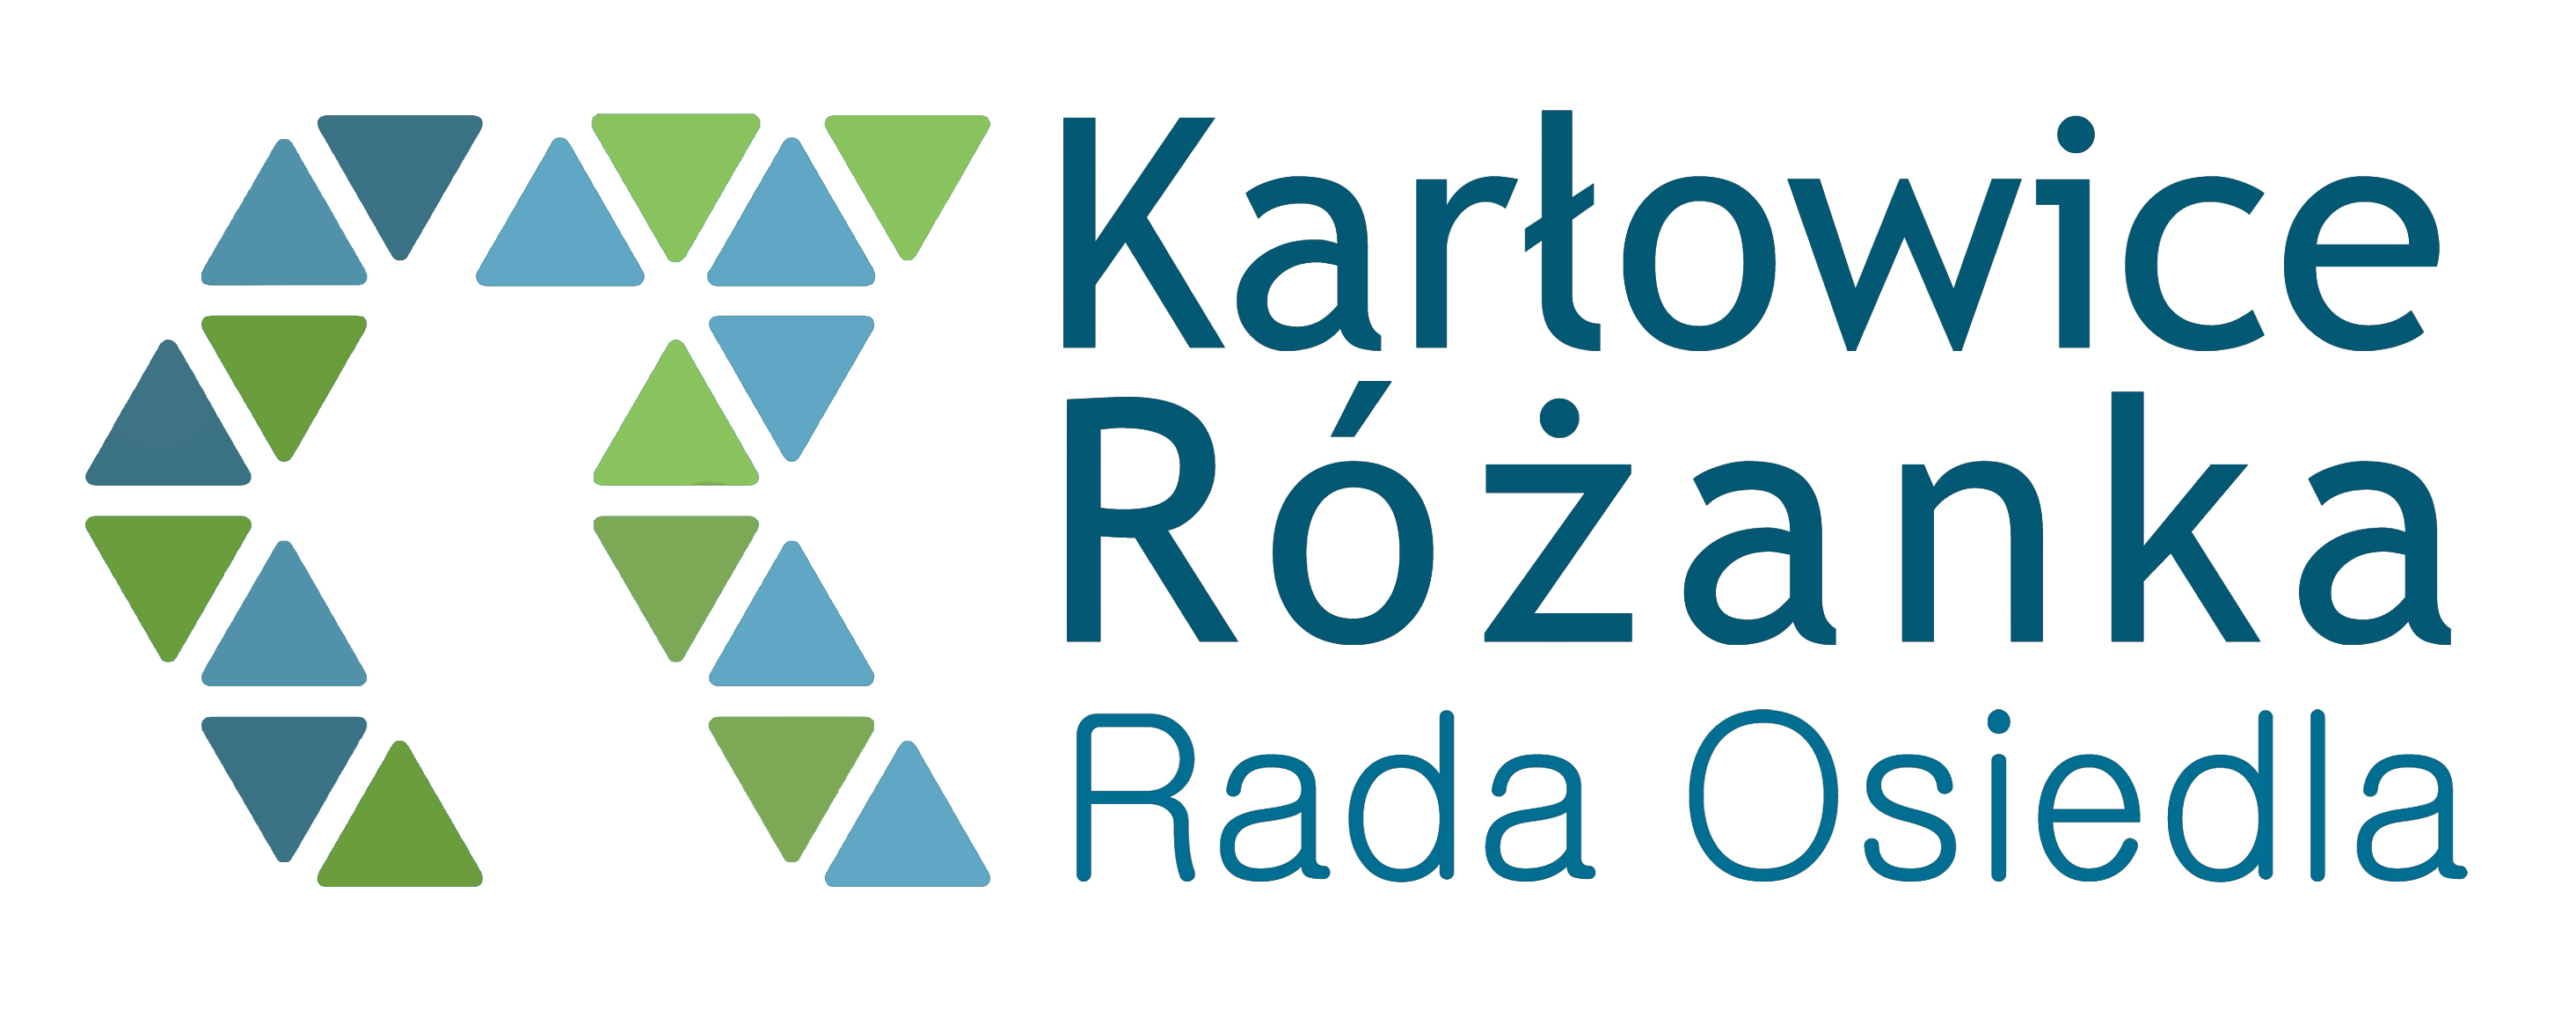 KR logo color1